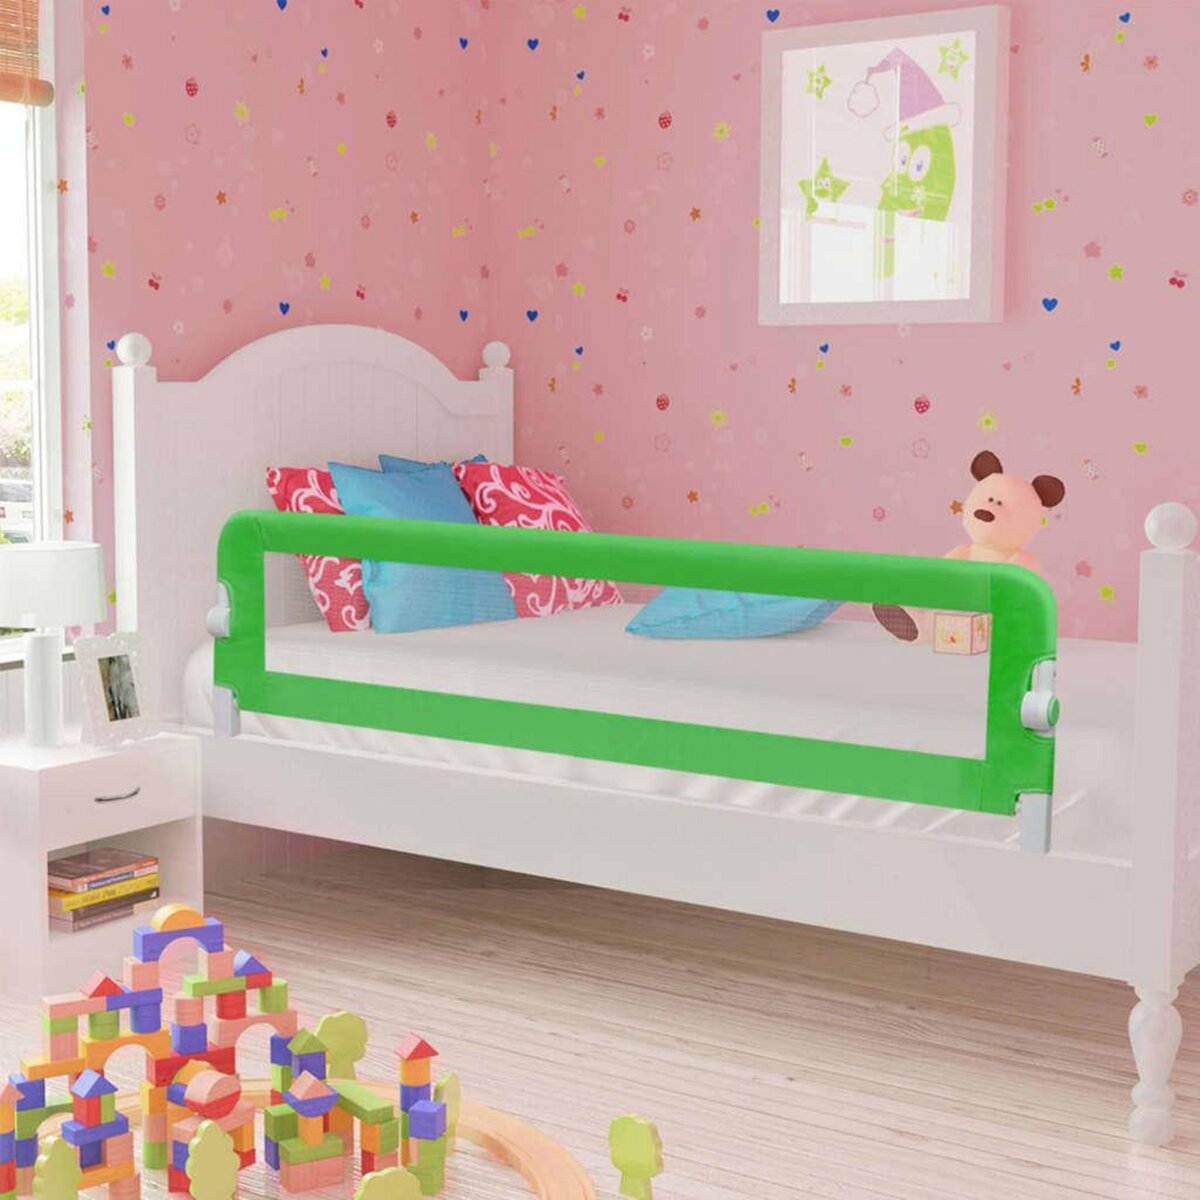 VIDAXL Barriere de securite de lit d'enfant Vert 120x42 cm Polyester